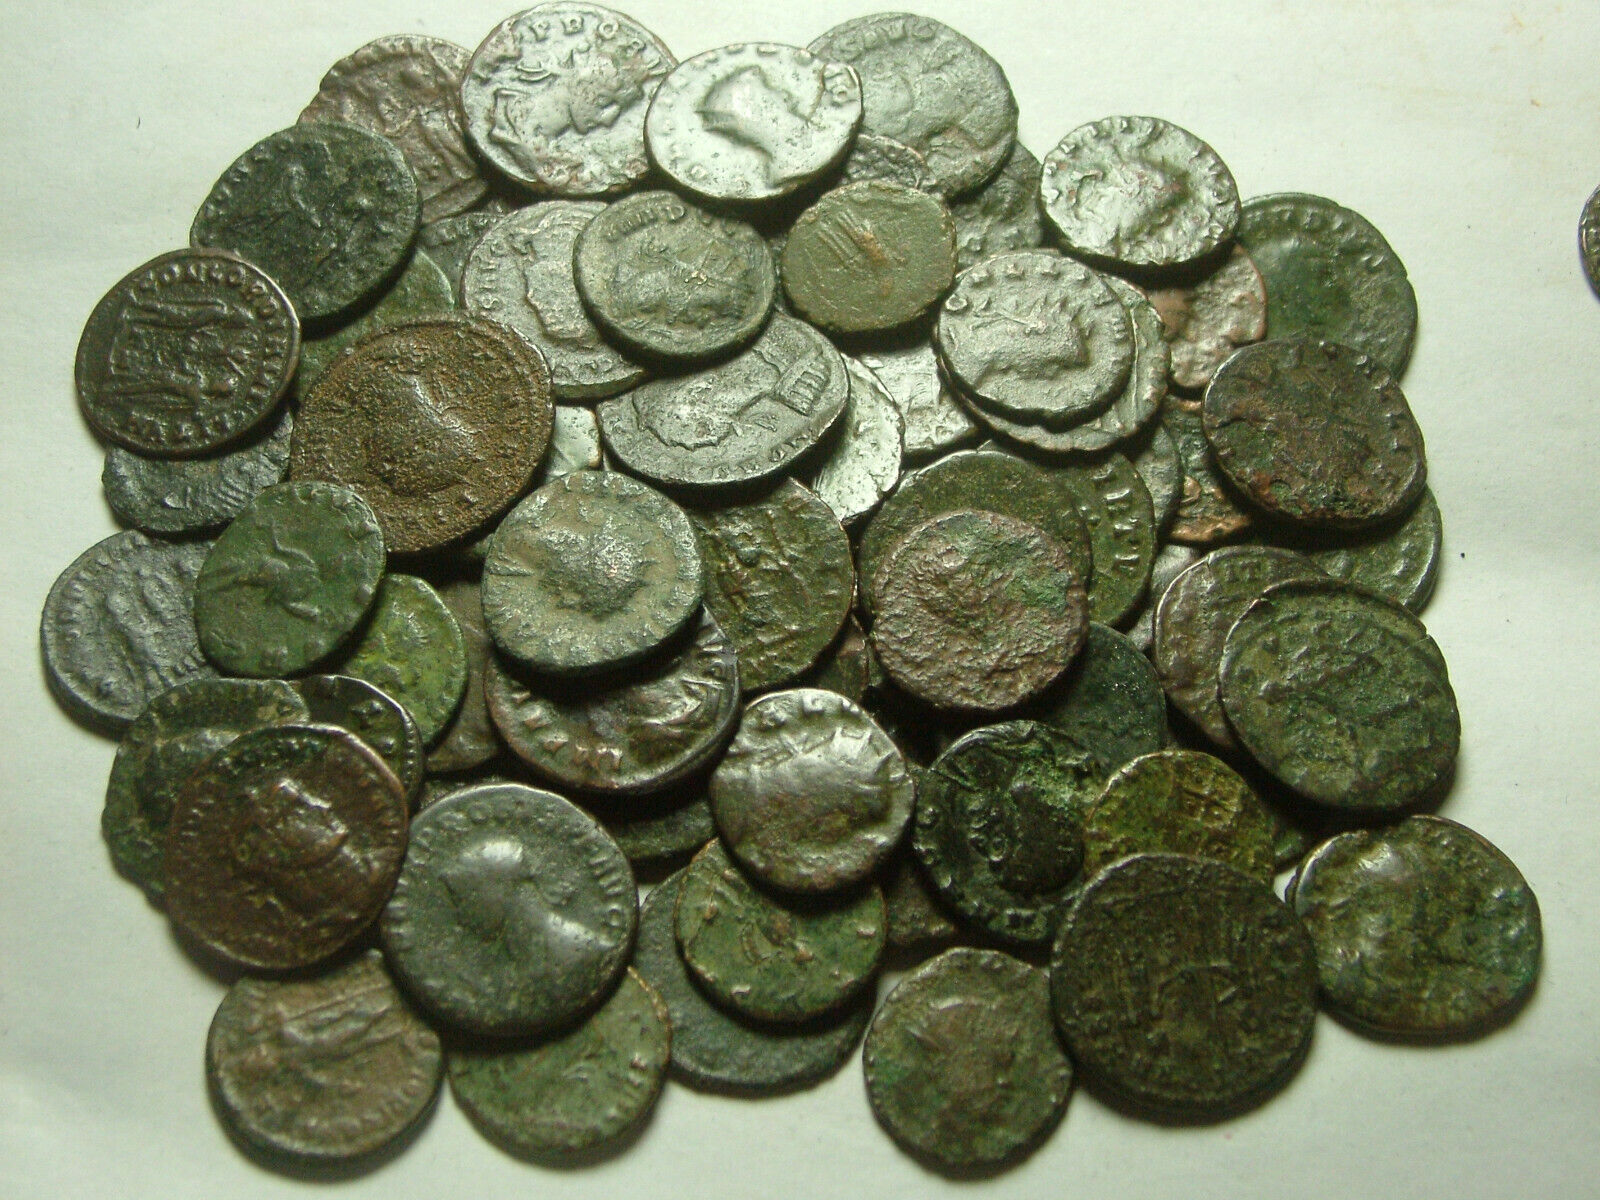 Lot of 3 Rare original Ancient Roman Antoninianus coins Probus Aurelian Claudius Без бренда - фотография #11